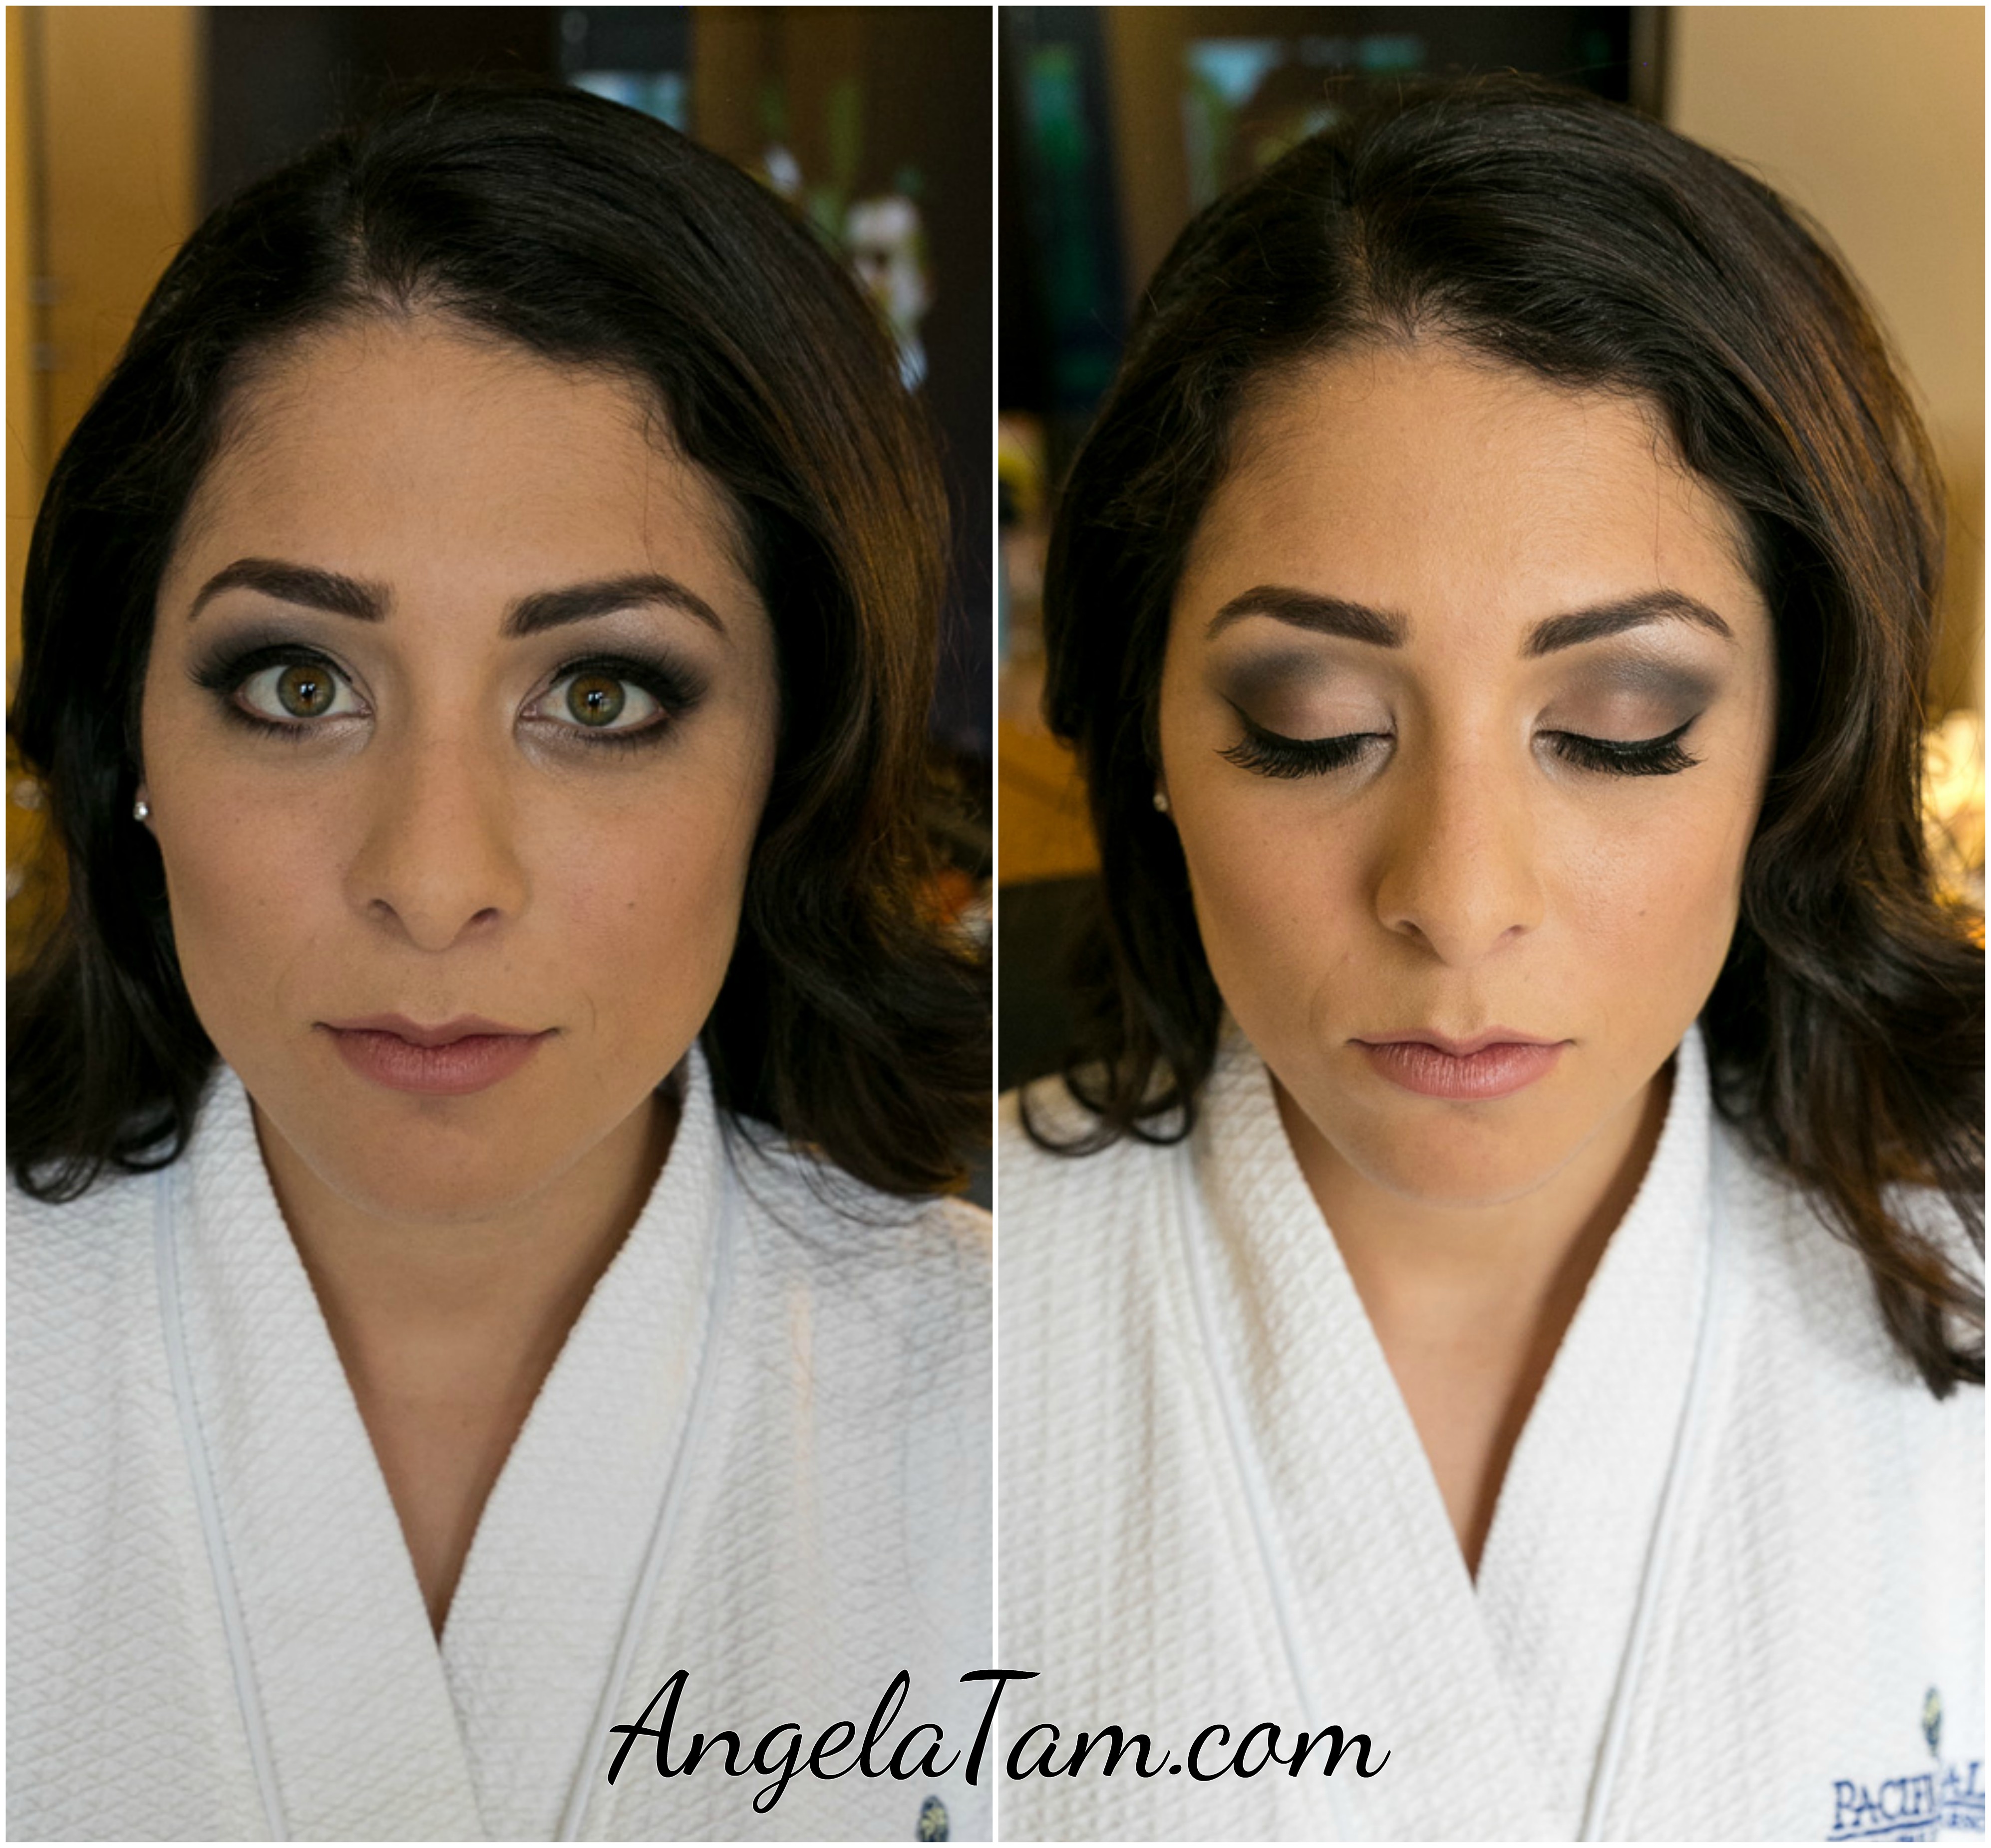 Angela Tam | Makeup Artist and Hair Design Team www.angelatam.com